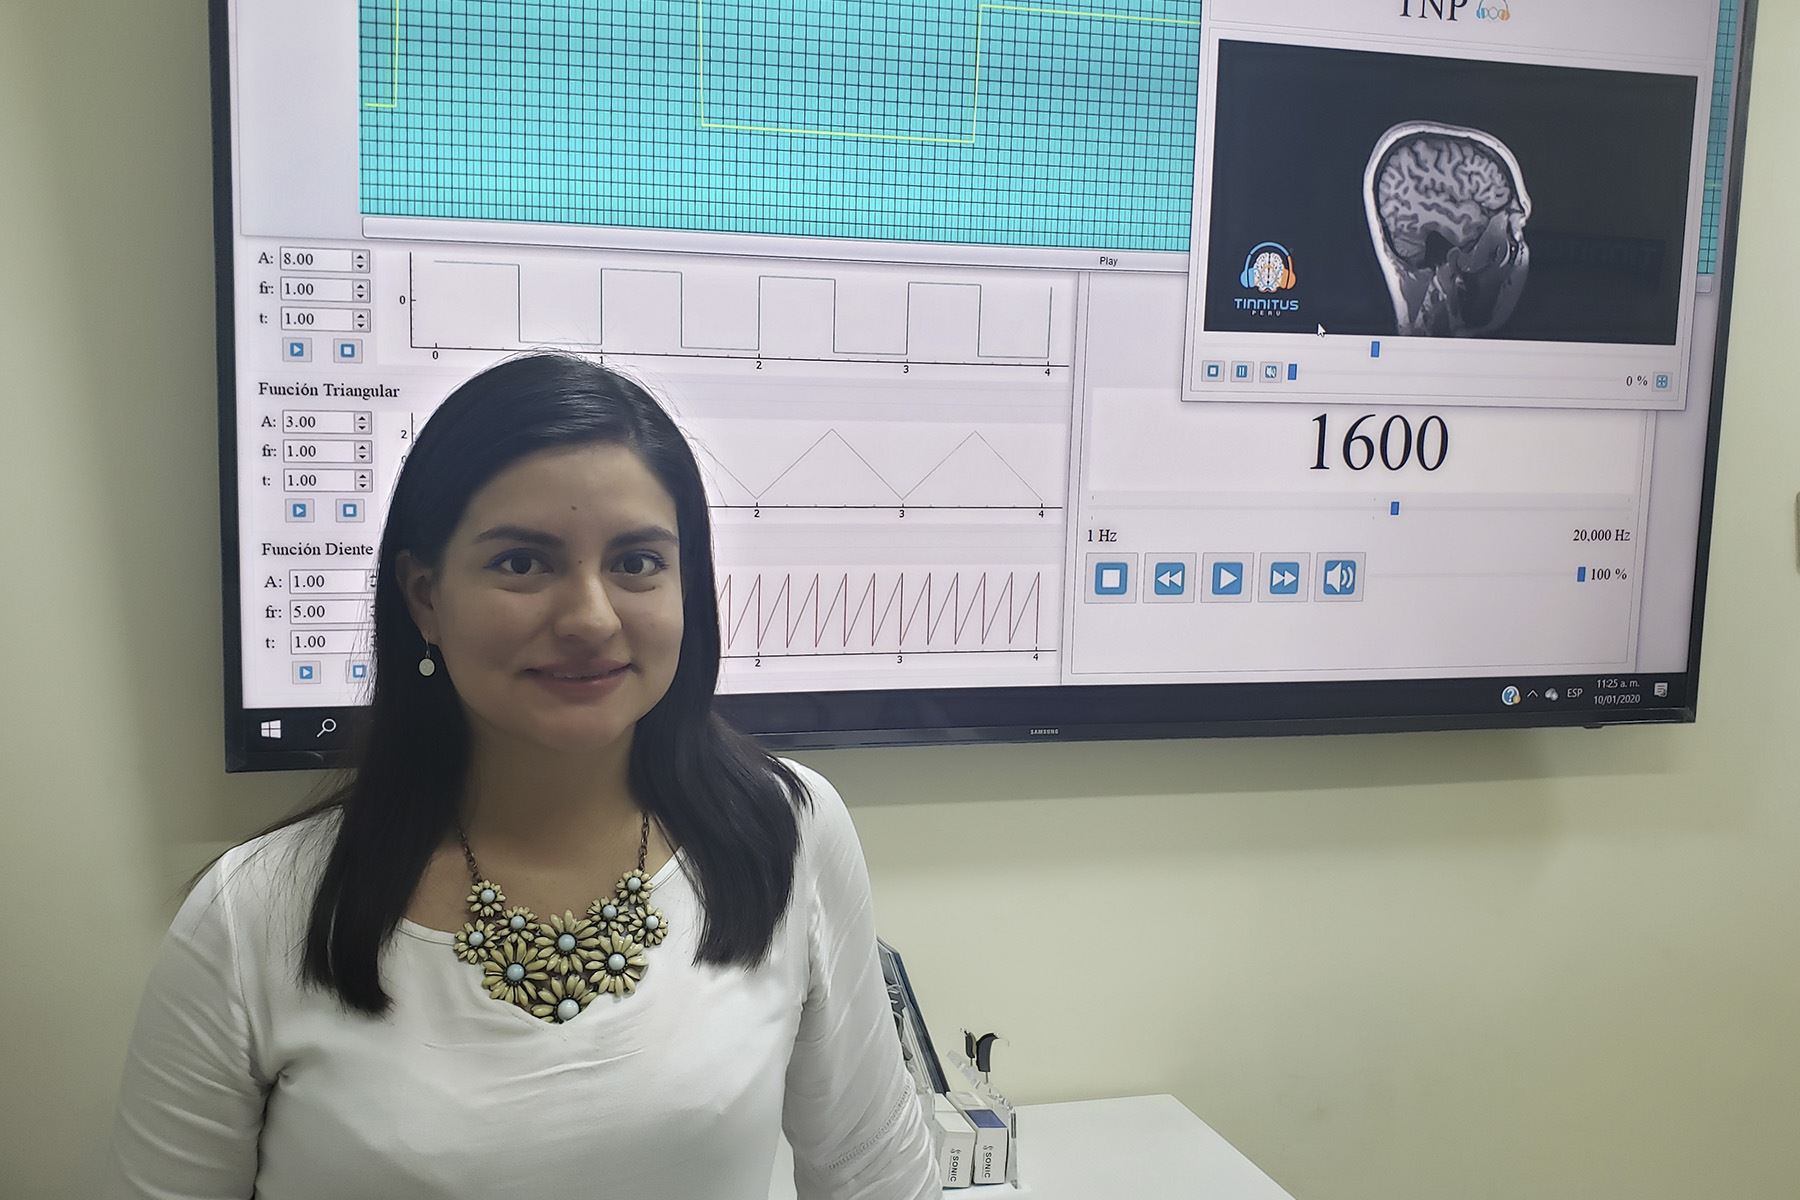 La tecnología de Tinnitus Perú permite reducir en un 80% los zumbidos que afectan a los pacientes.